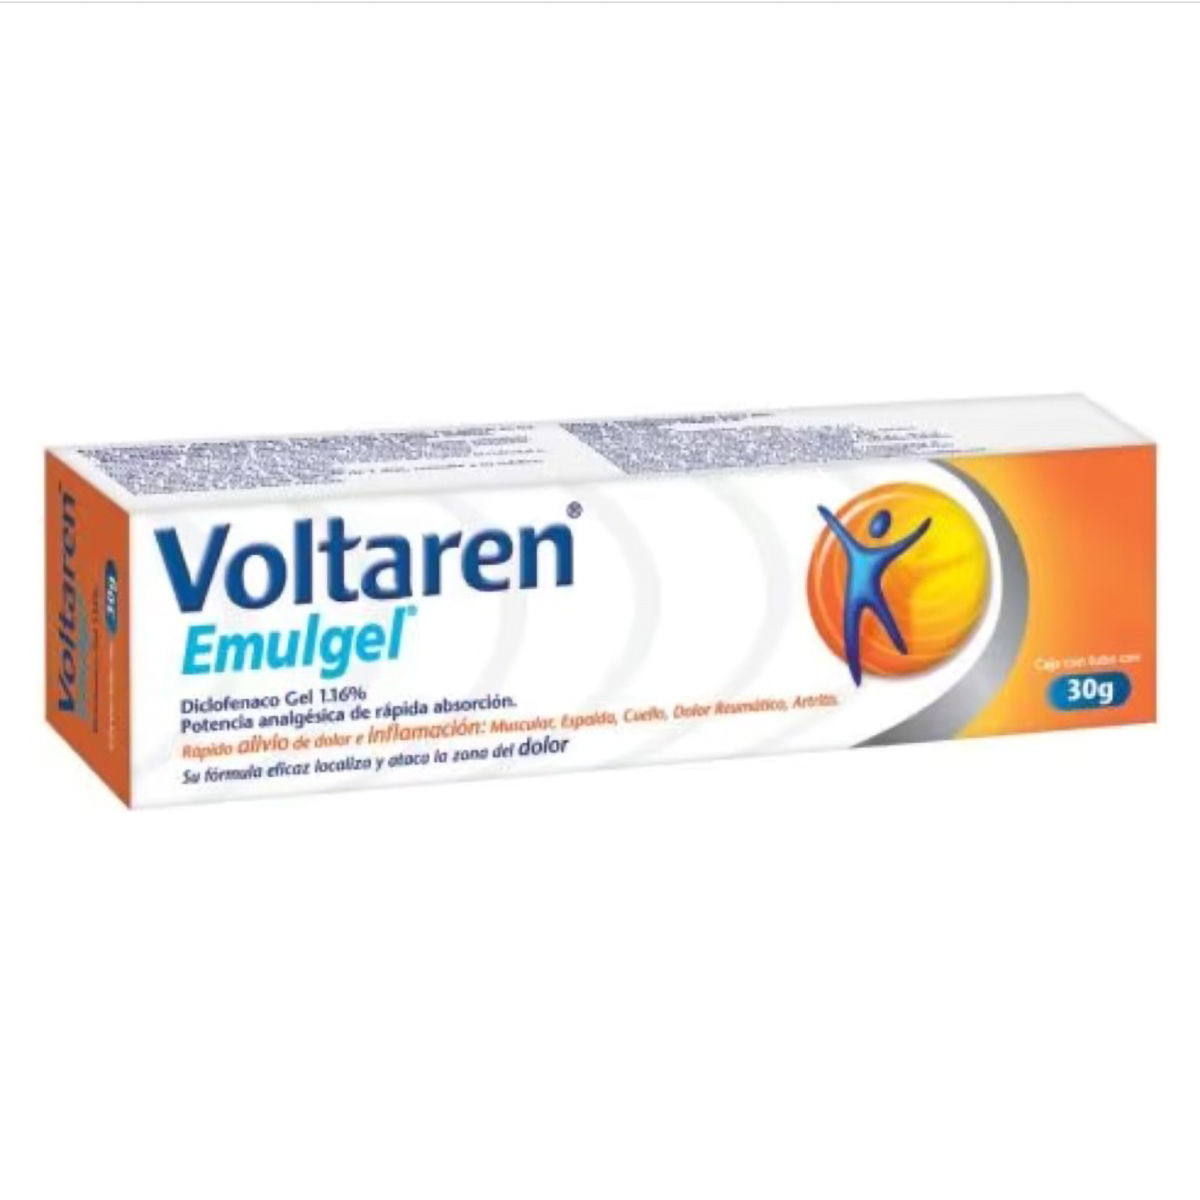 Voltaren Emulgel, 30 gm | Uses, Benefits, Price | Apollo Pharmacy